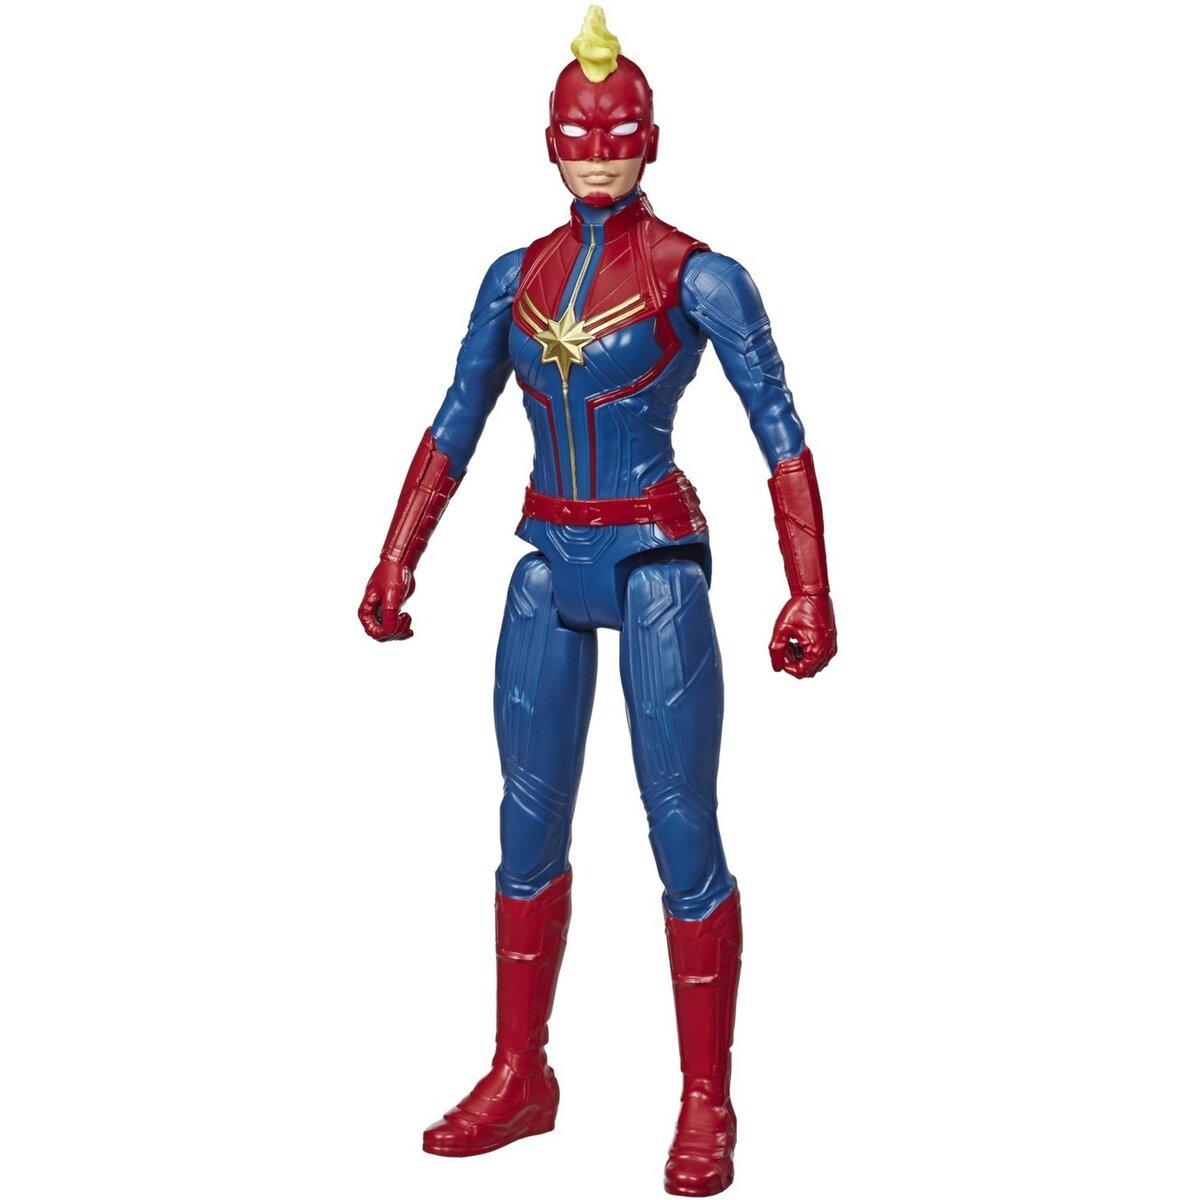 HASBRO Figurine Titan Avengers Endgame - Captain Marvel